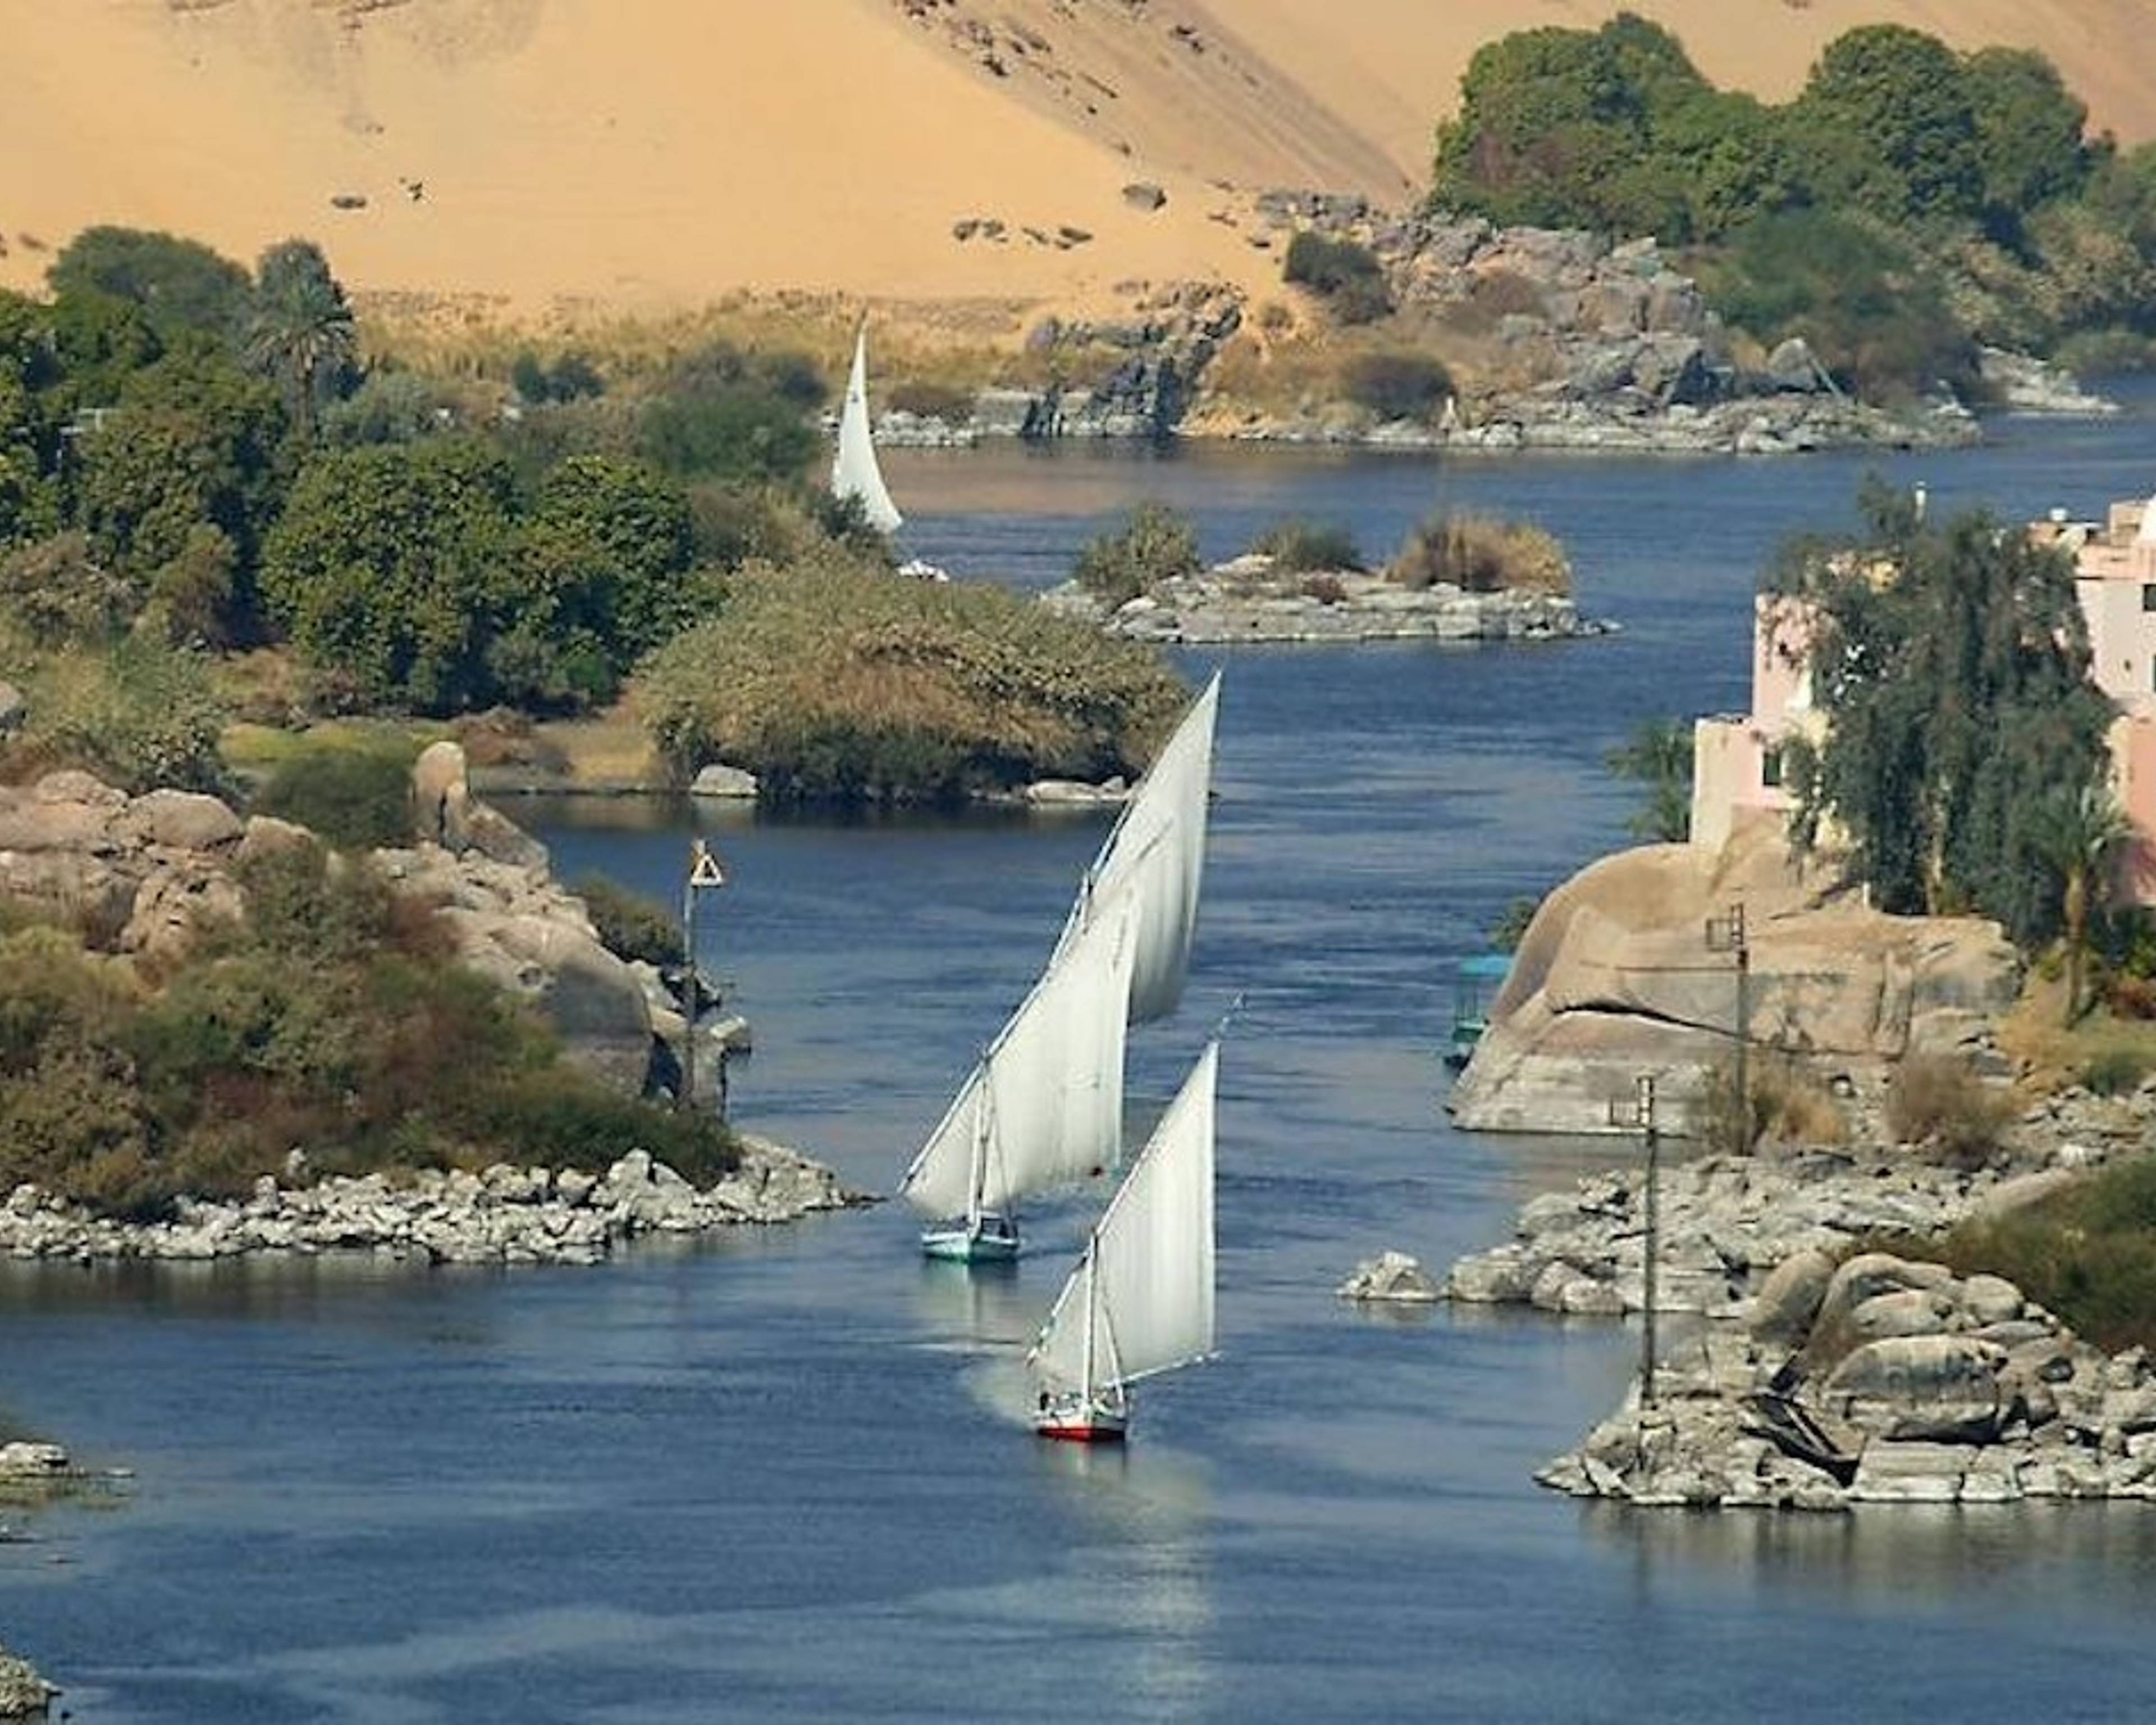 Soluzione ecologica alla navigazione sul Nilo: la felucca nubiana